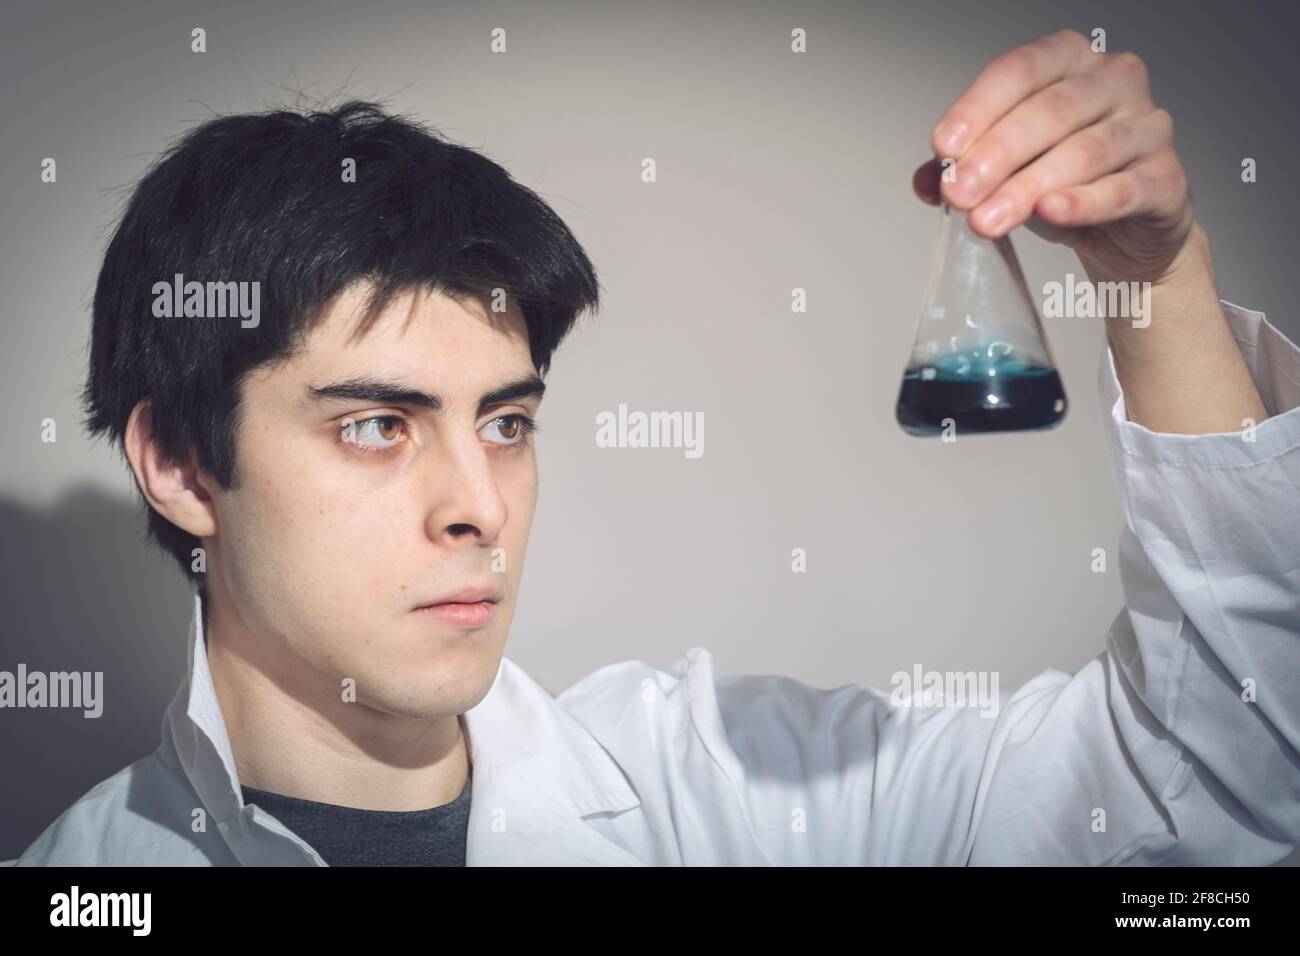 Un joven caucásico de apariencia hispana en una bata de laboratorio que examina una muestra en un matraz cónico, escuela secundaria, universidad, química Foto de stock